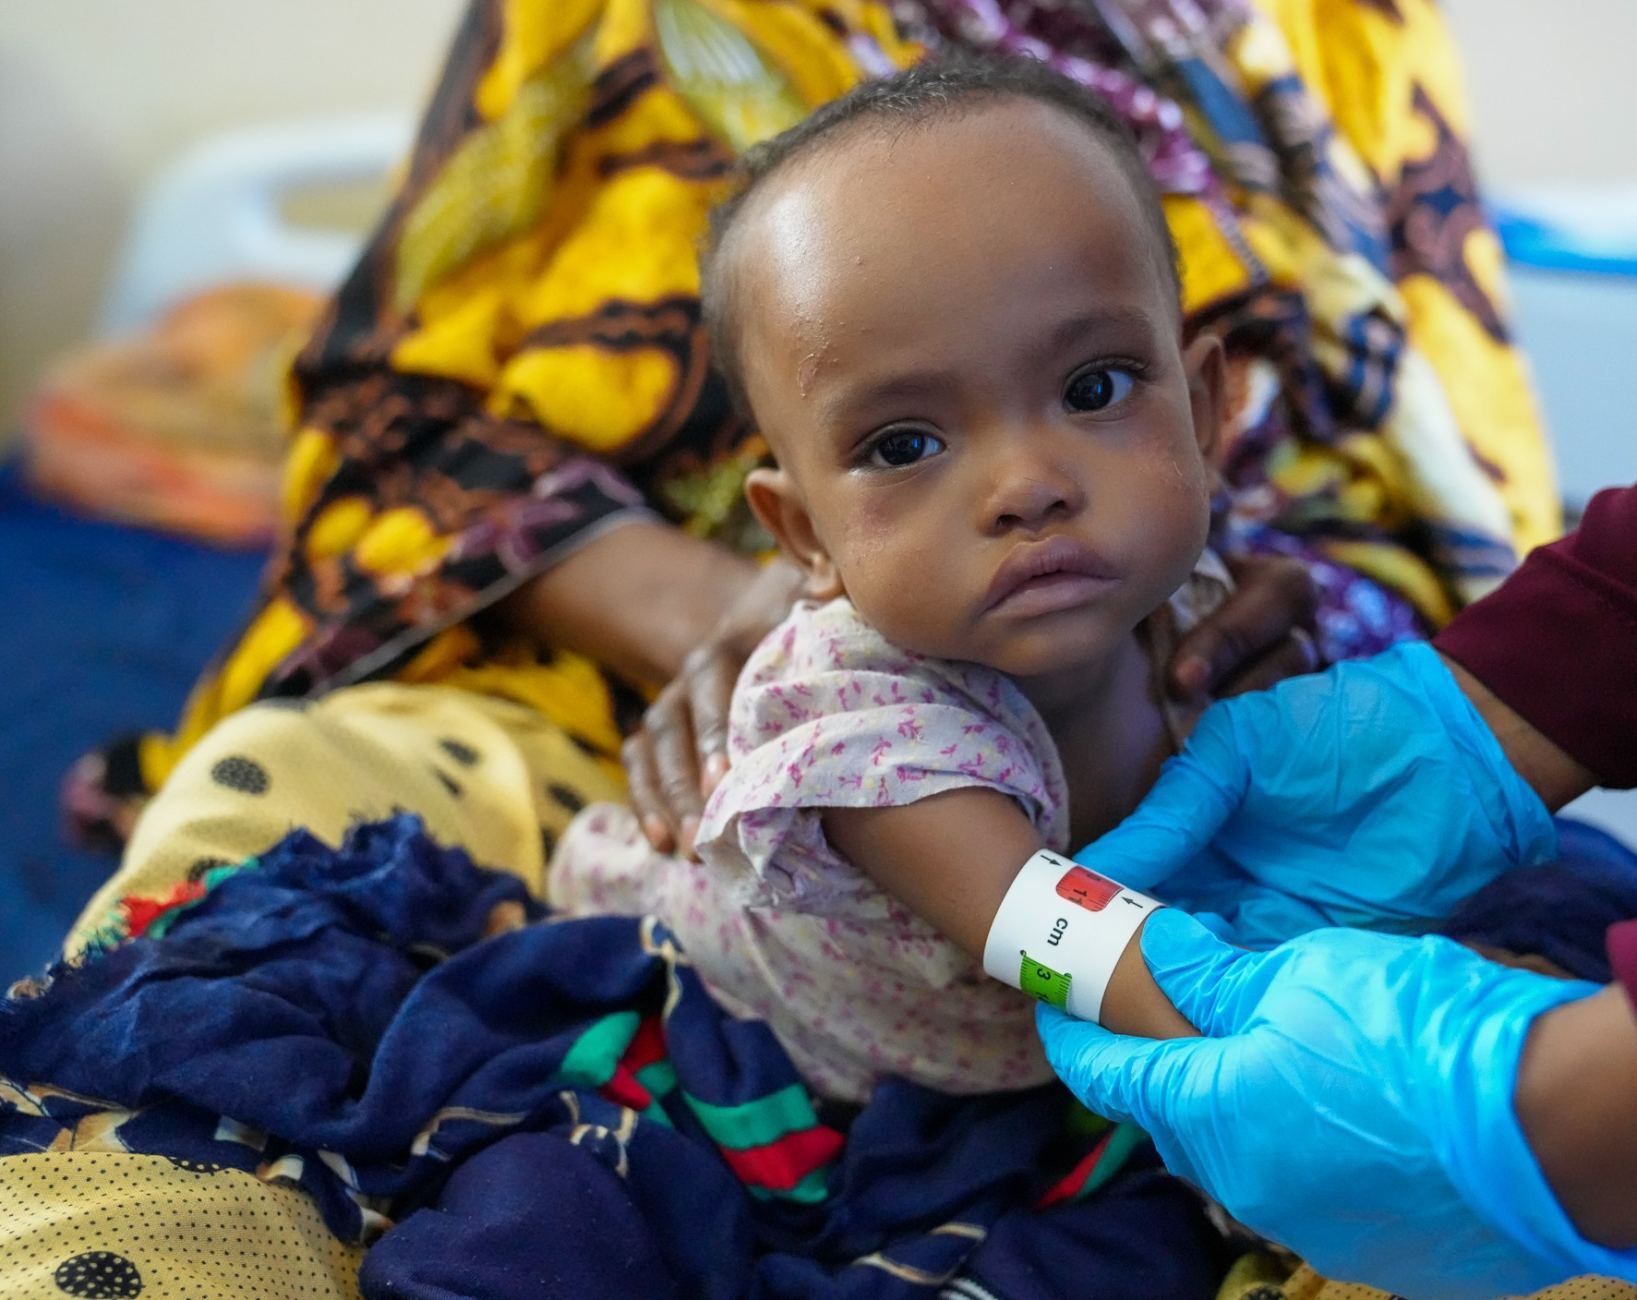 Child in Somalia suffering from severe malnutrition